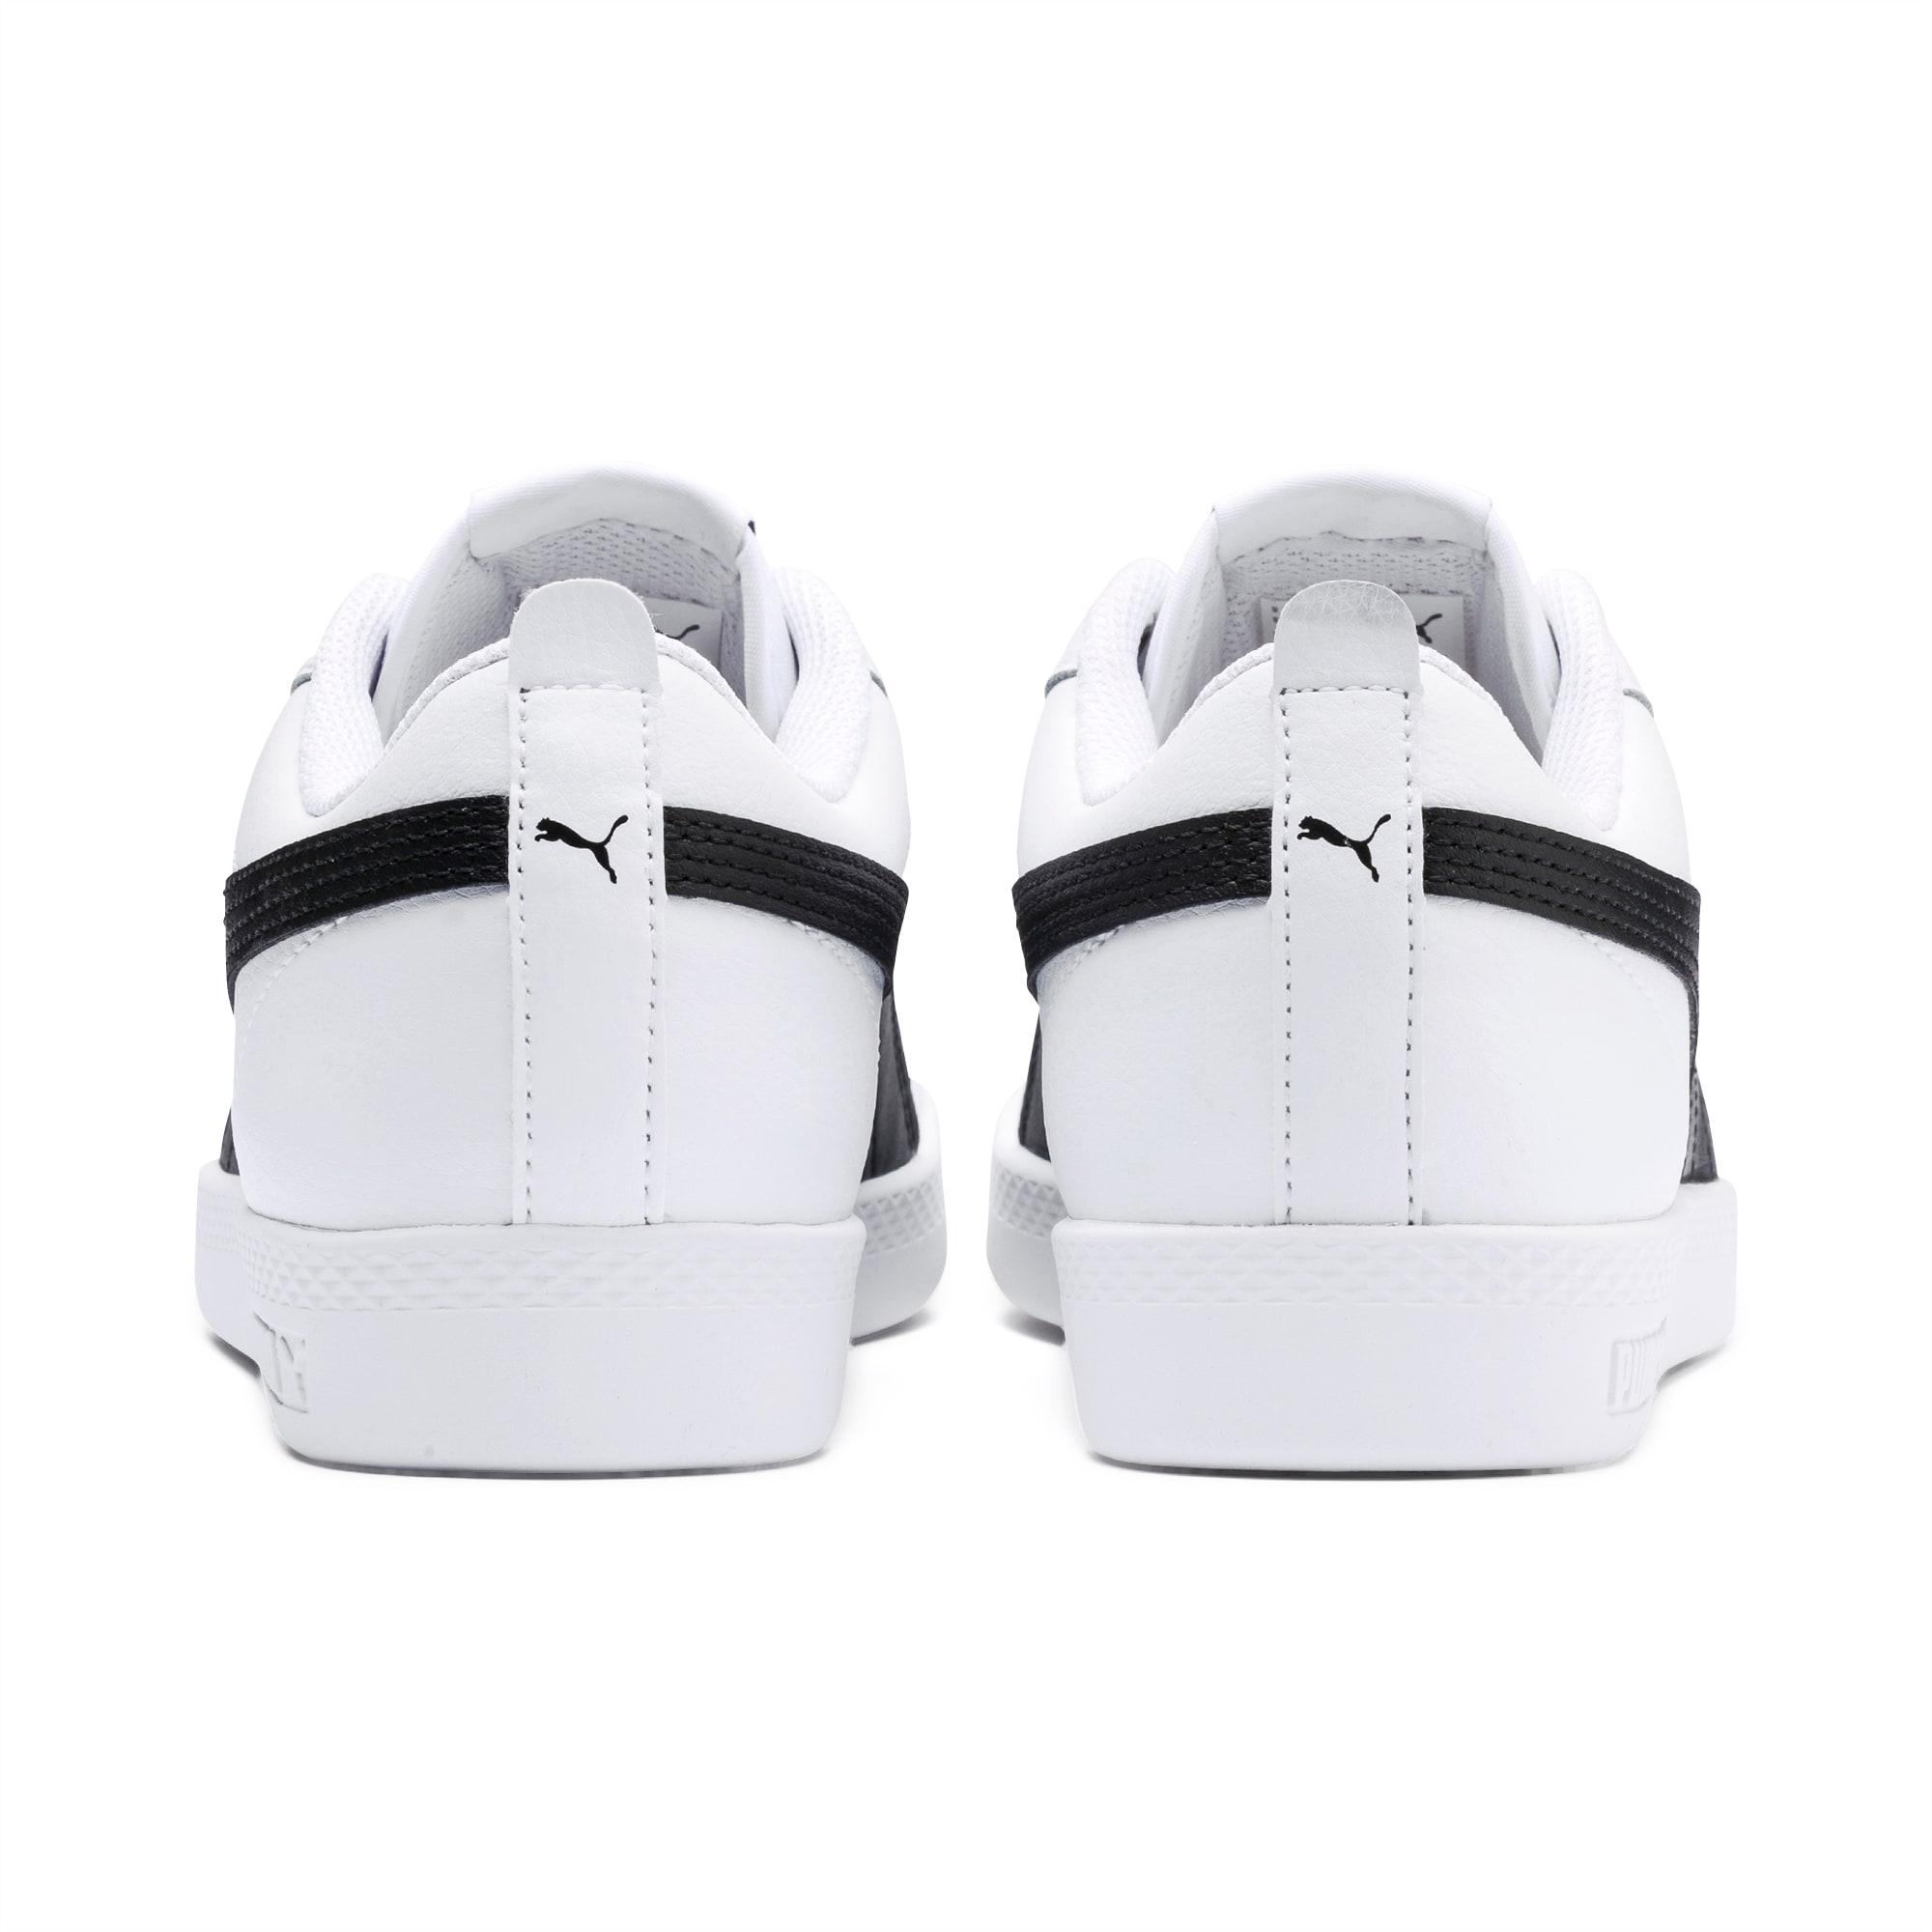 PUMA Smash V2 Leder-Sneakers Damen Schuhe, Weiß/Schwarz, Größe: 35.5, Schuhe